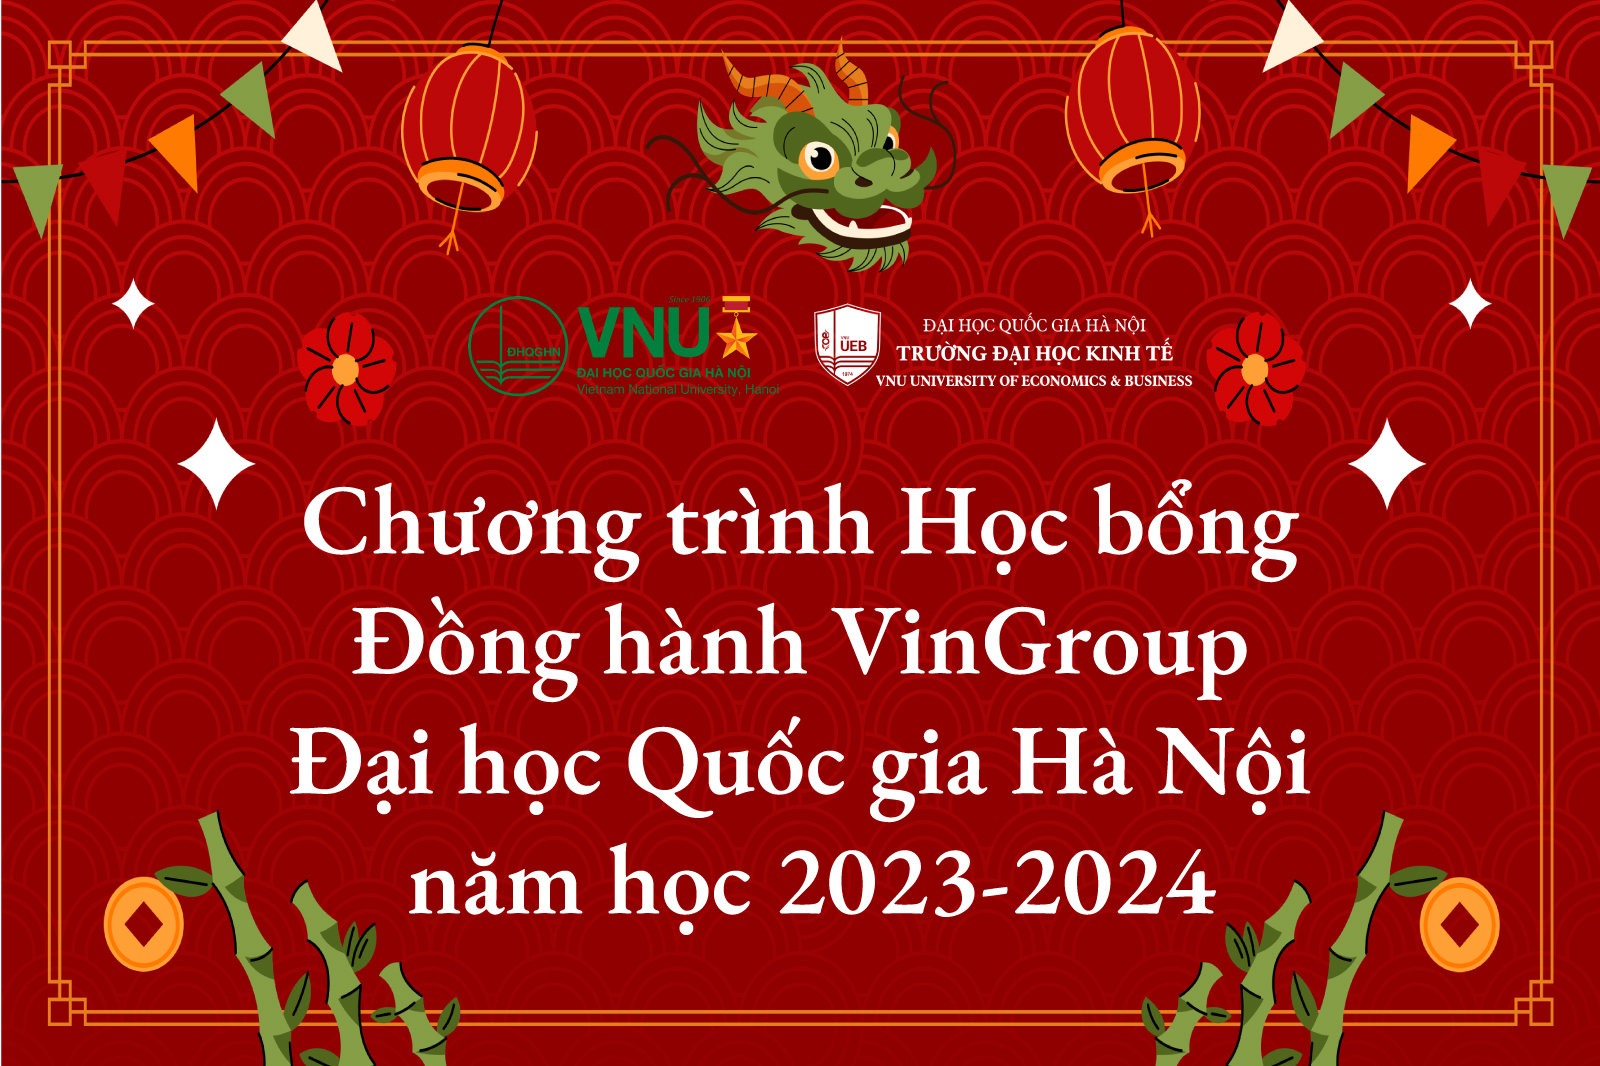 Chương trình Học bổng Đồng hành VinGroup - Đại học Quốc gia Hà Nội năm học 2023-2024